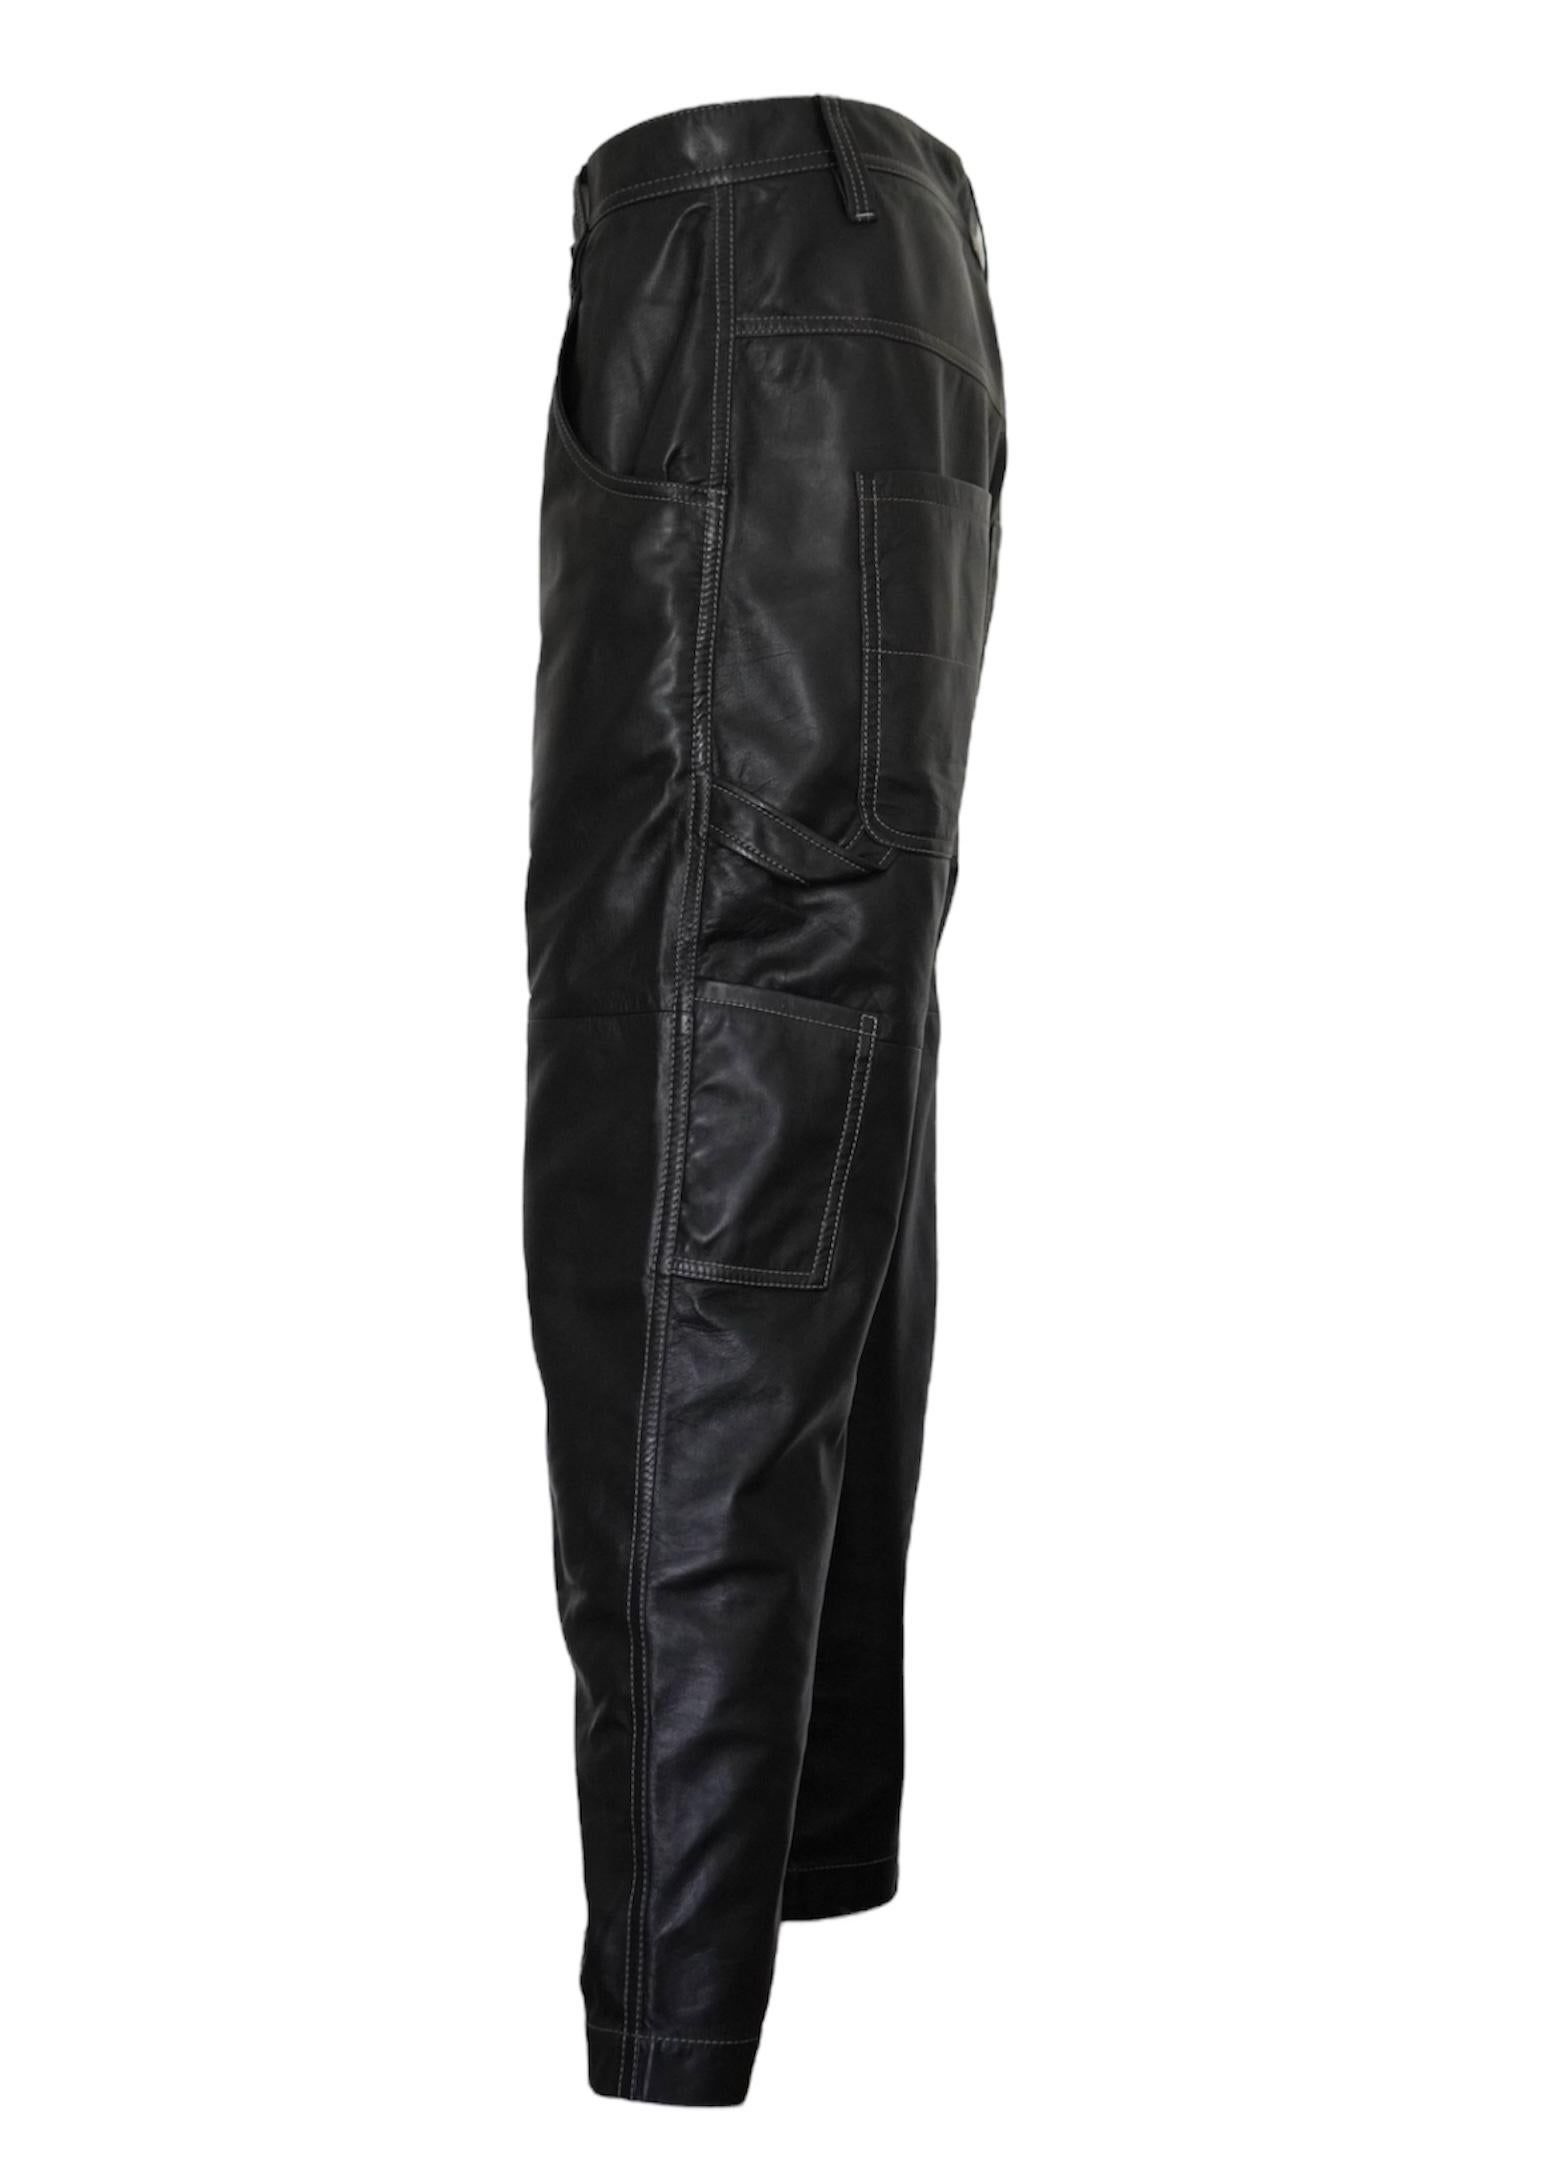 Brunello Cucinelli Pantalon en cuir noir taille 6. 
Ce pantalon a une coupe plus ample et une allure de cargo. Longueur 37.5 pouces, taille : 32 pouces, Hanches : 38 pouces. Fabriquées en Italie. 

Brunello Cucinelli est une marque italienne de mode